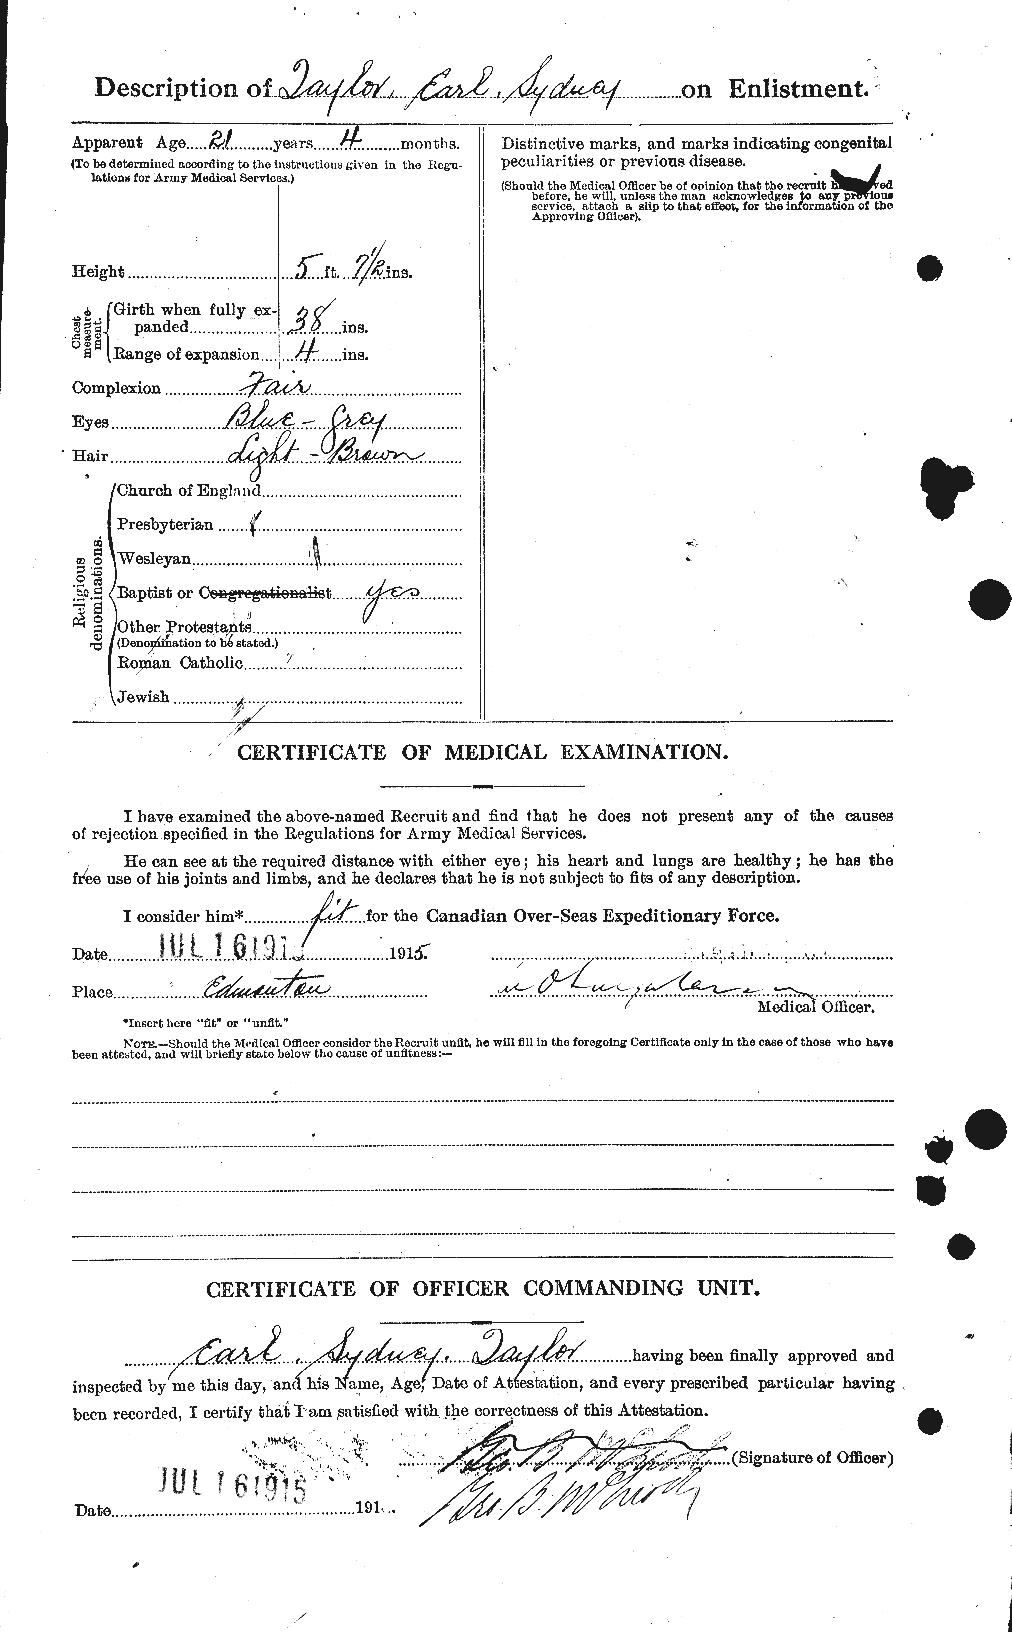 Dossiers du Personnel de la Première Guerre mondiale - CEC 627267b